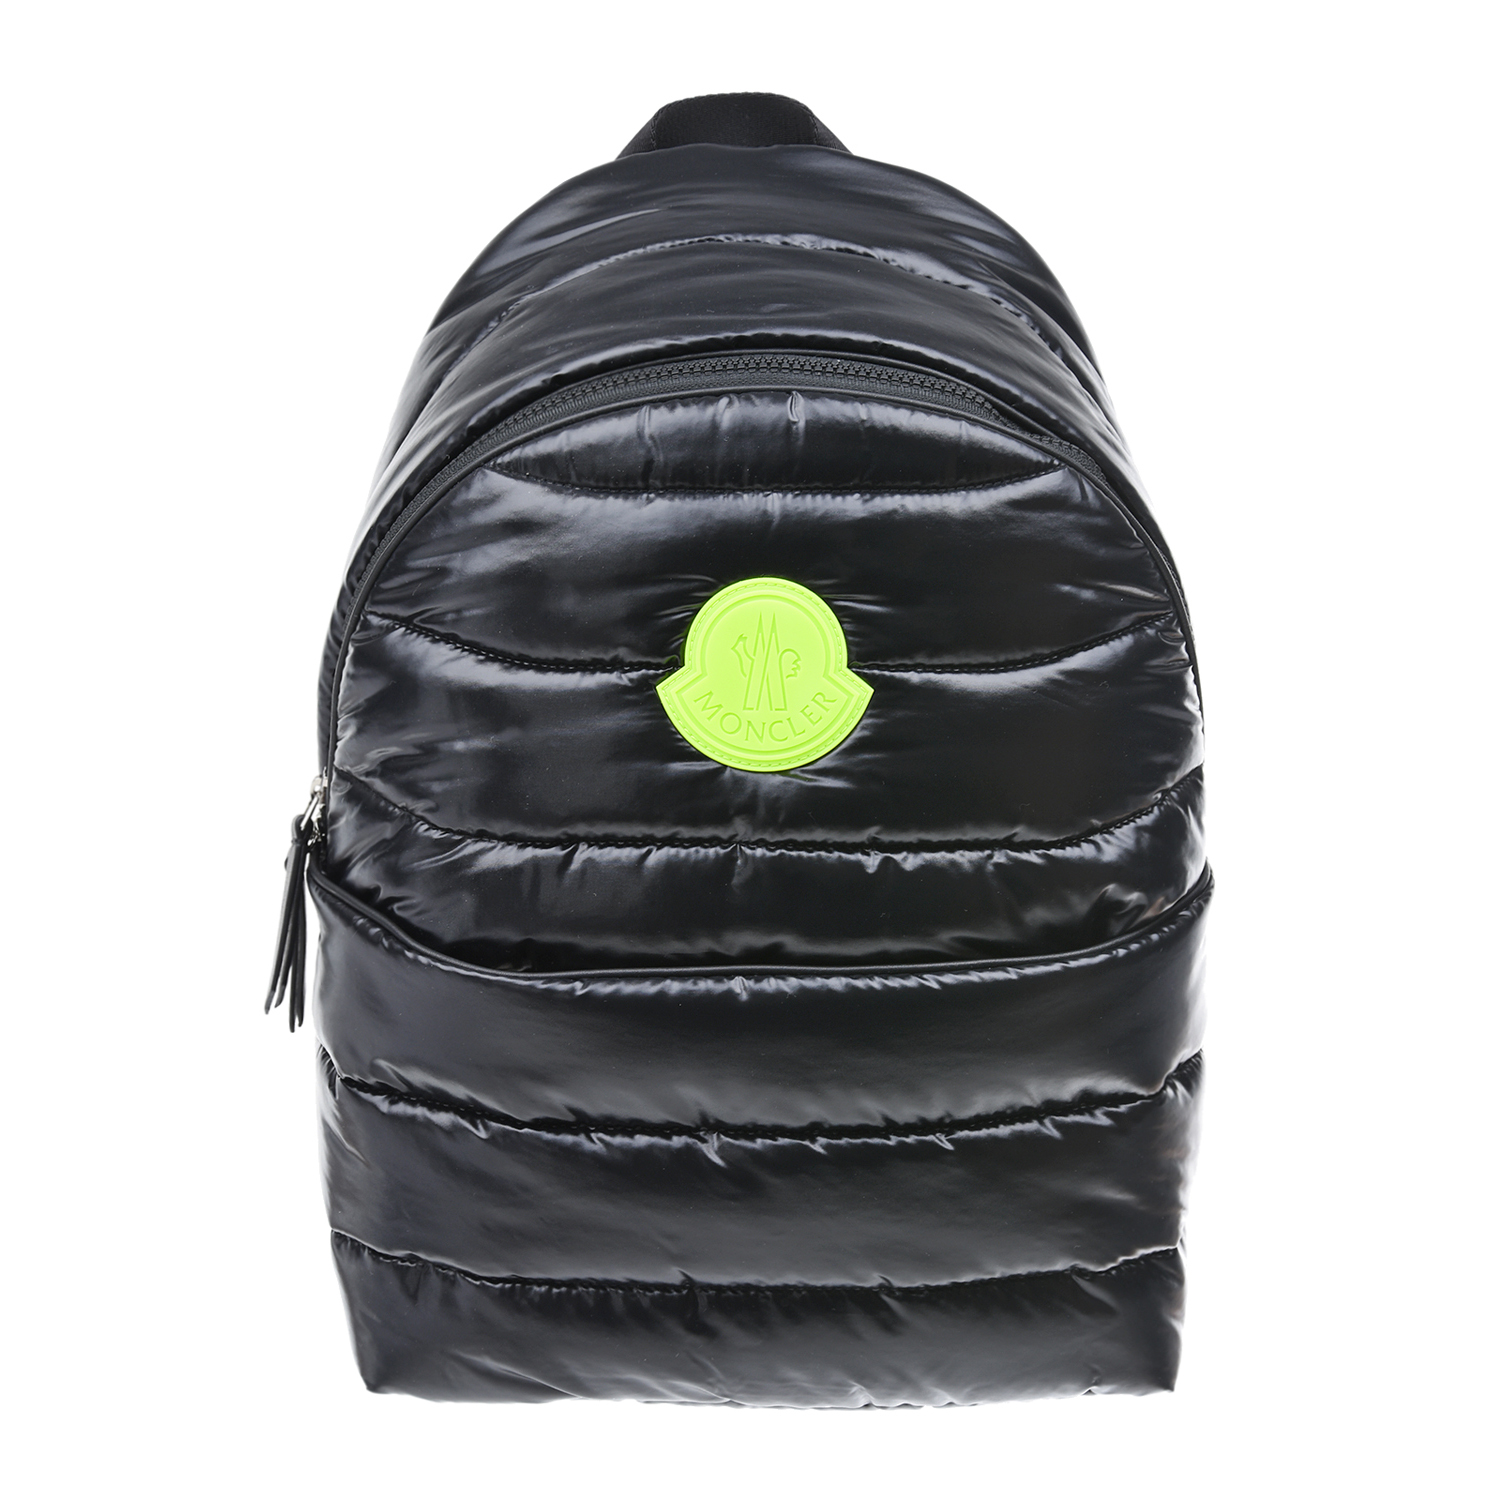 Болоньевая дутая сумка с контрастным подкладом и крупным логотипом PLEIN Sport в сером оттенке